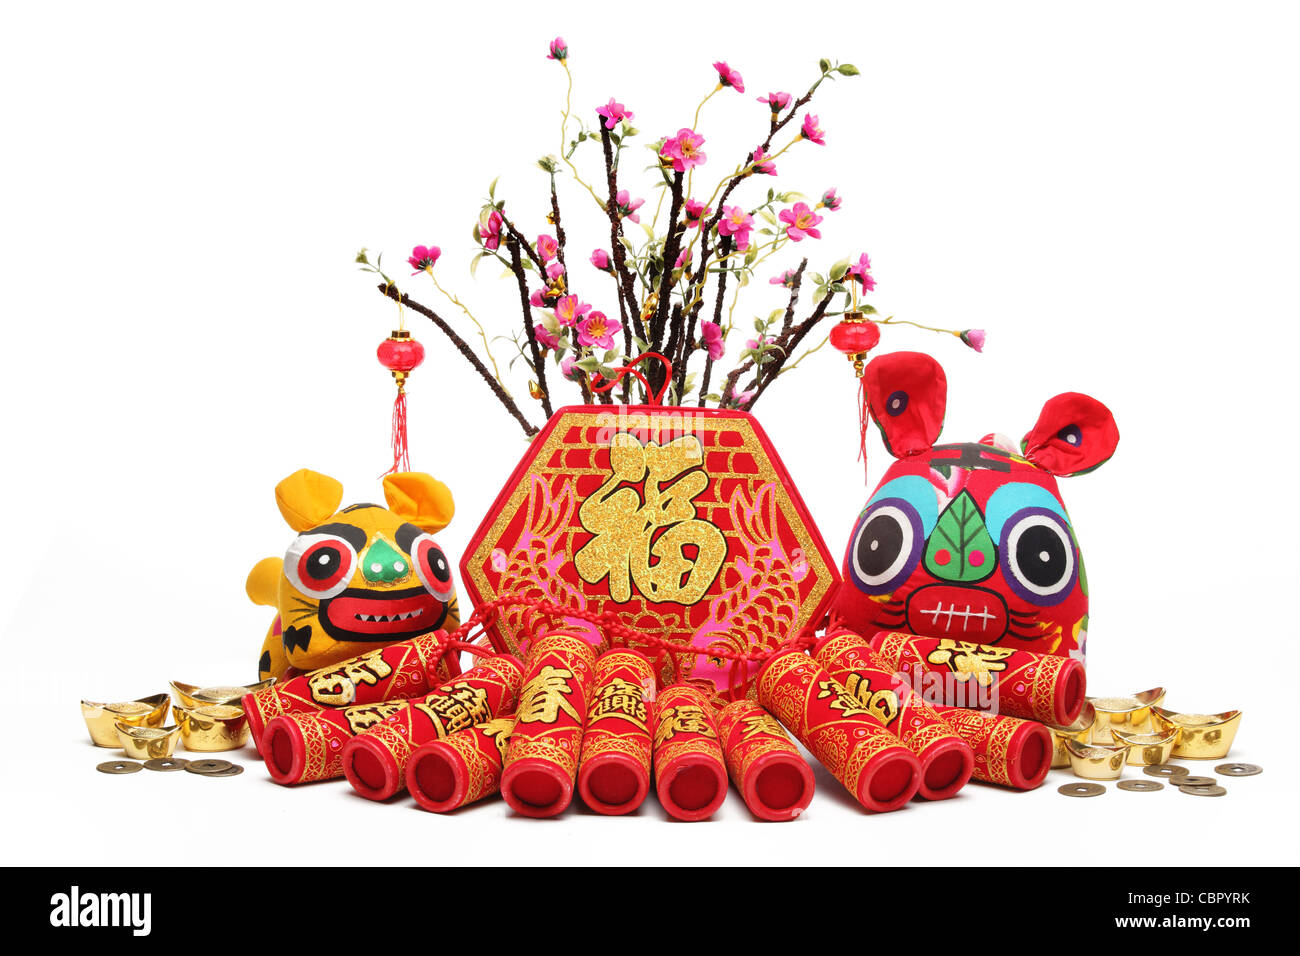 Chinese New Year Dekorationen – traditionelles Handwerk Tuch Tiger, Feuerwerkskörper und Pflaumenbaum. Stockfoto